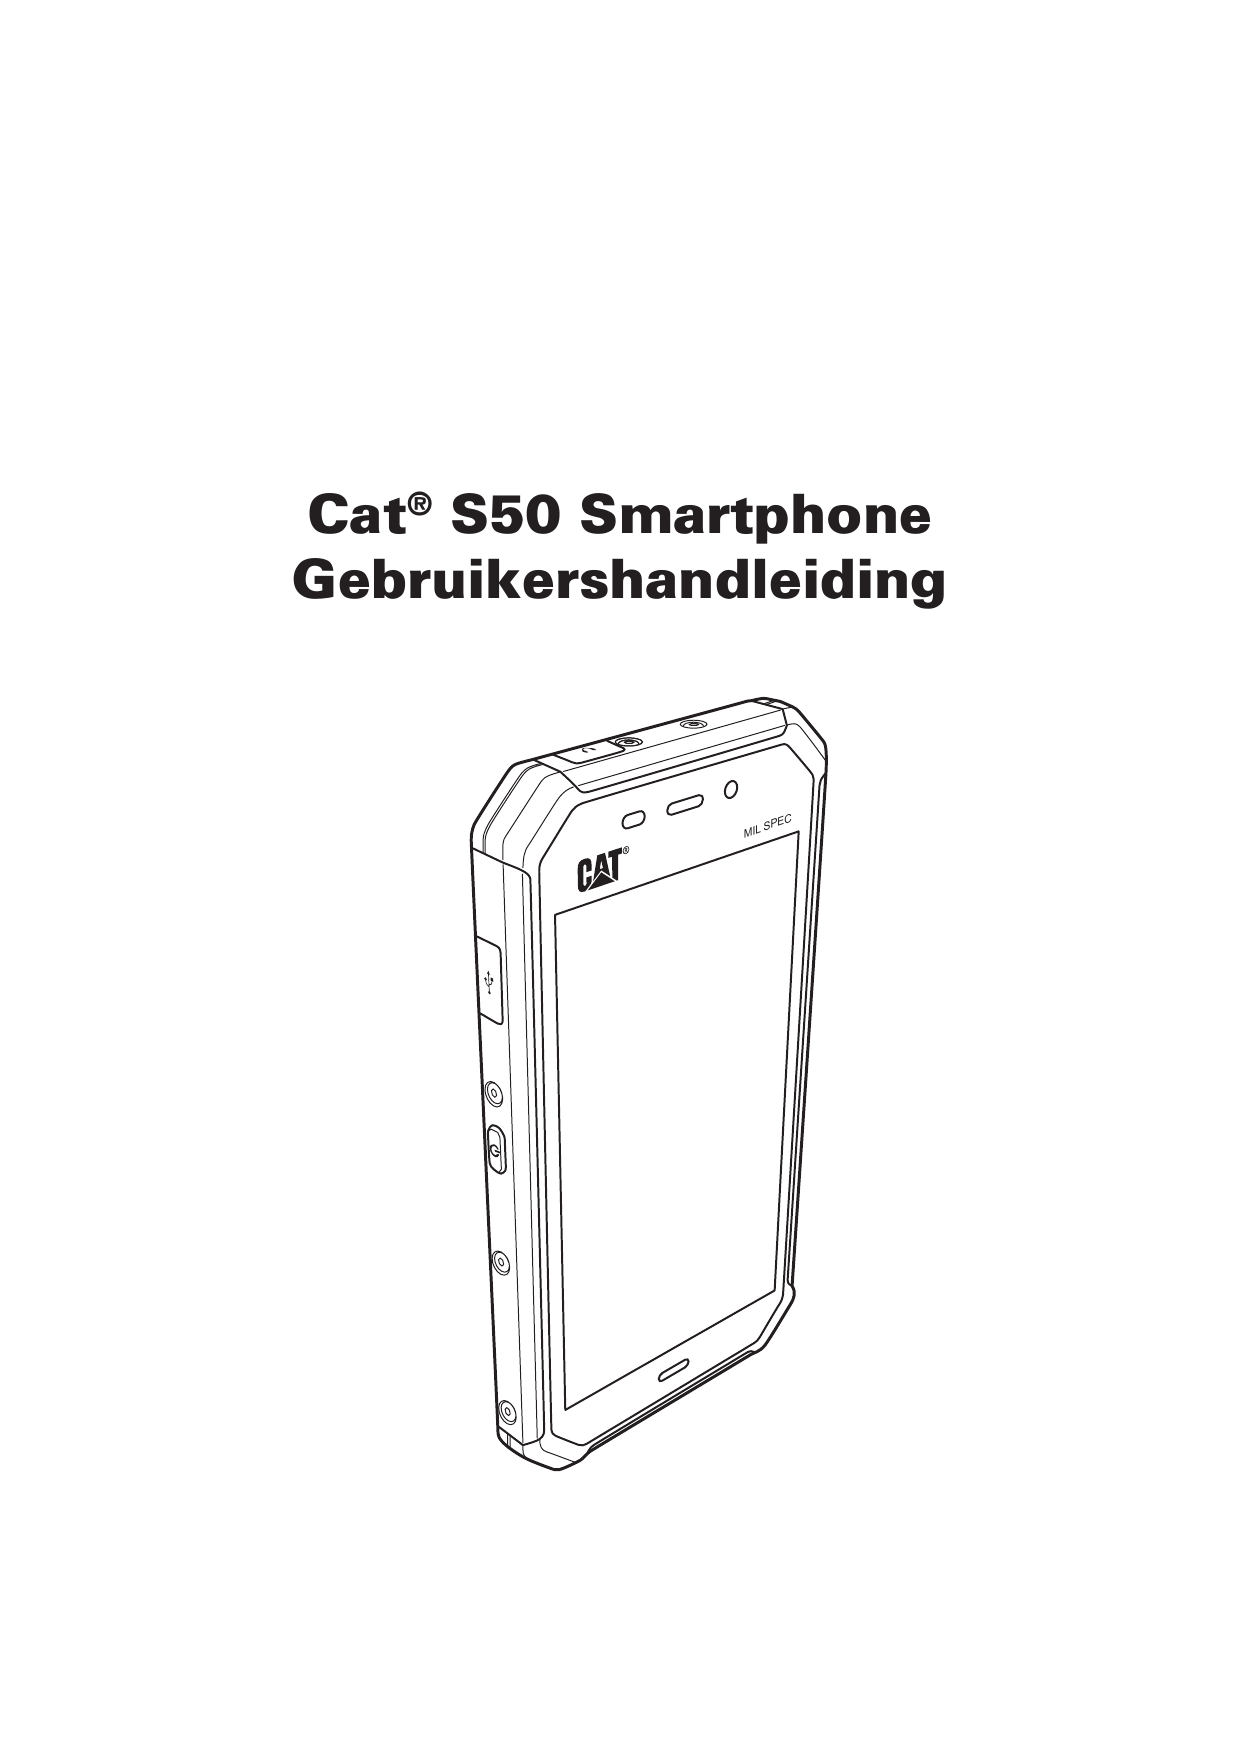 Cat® S50 SmartphoneGebruikershandleidingMILCSPE